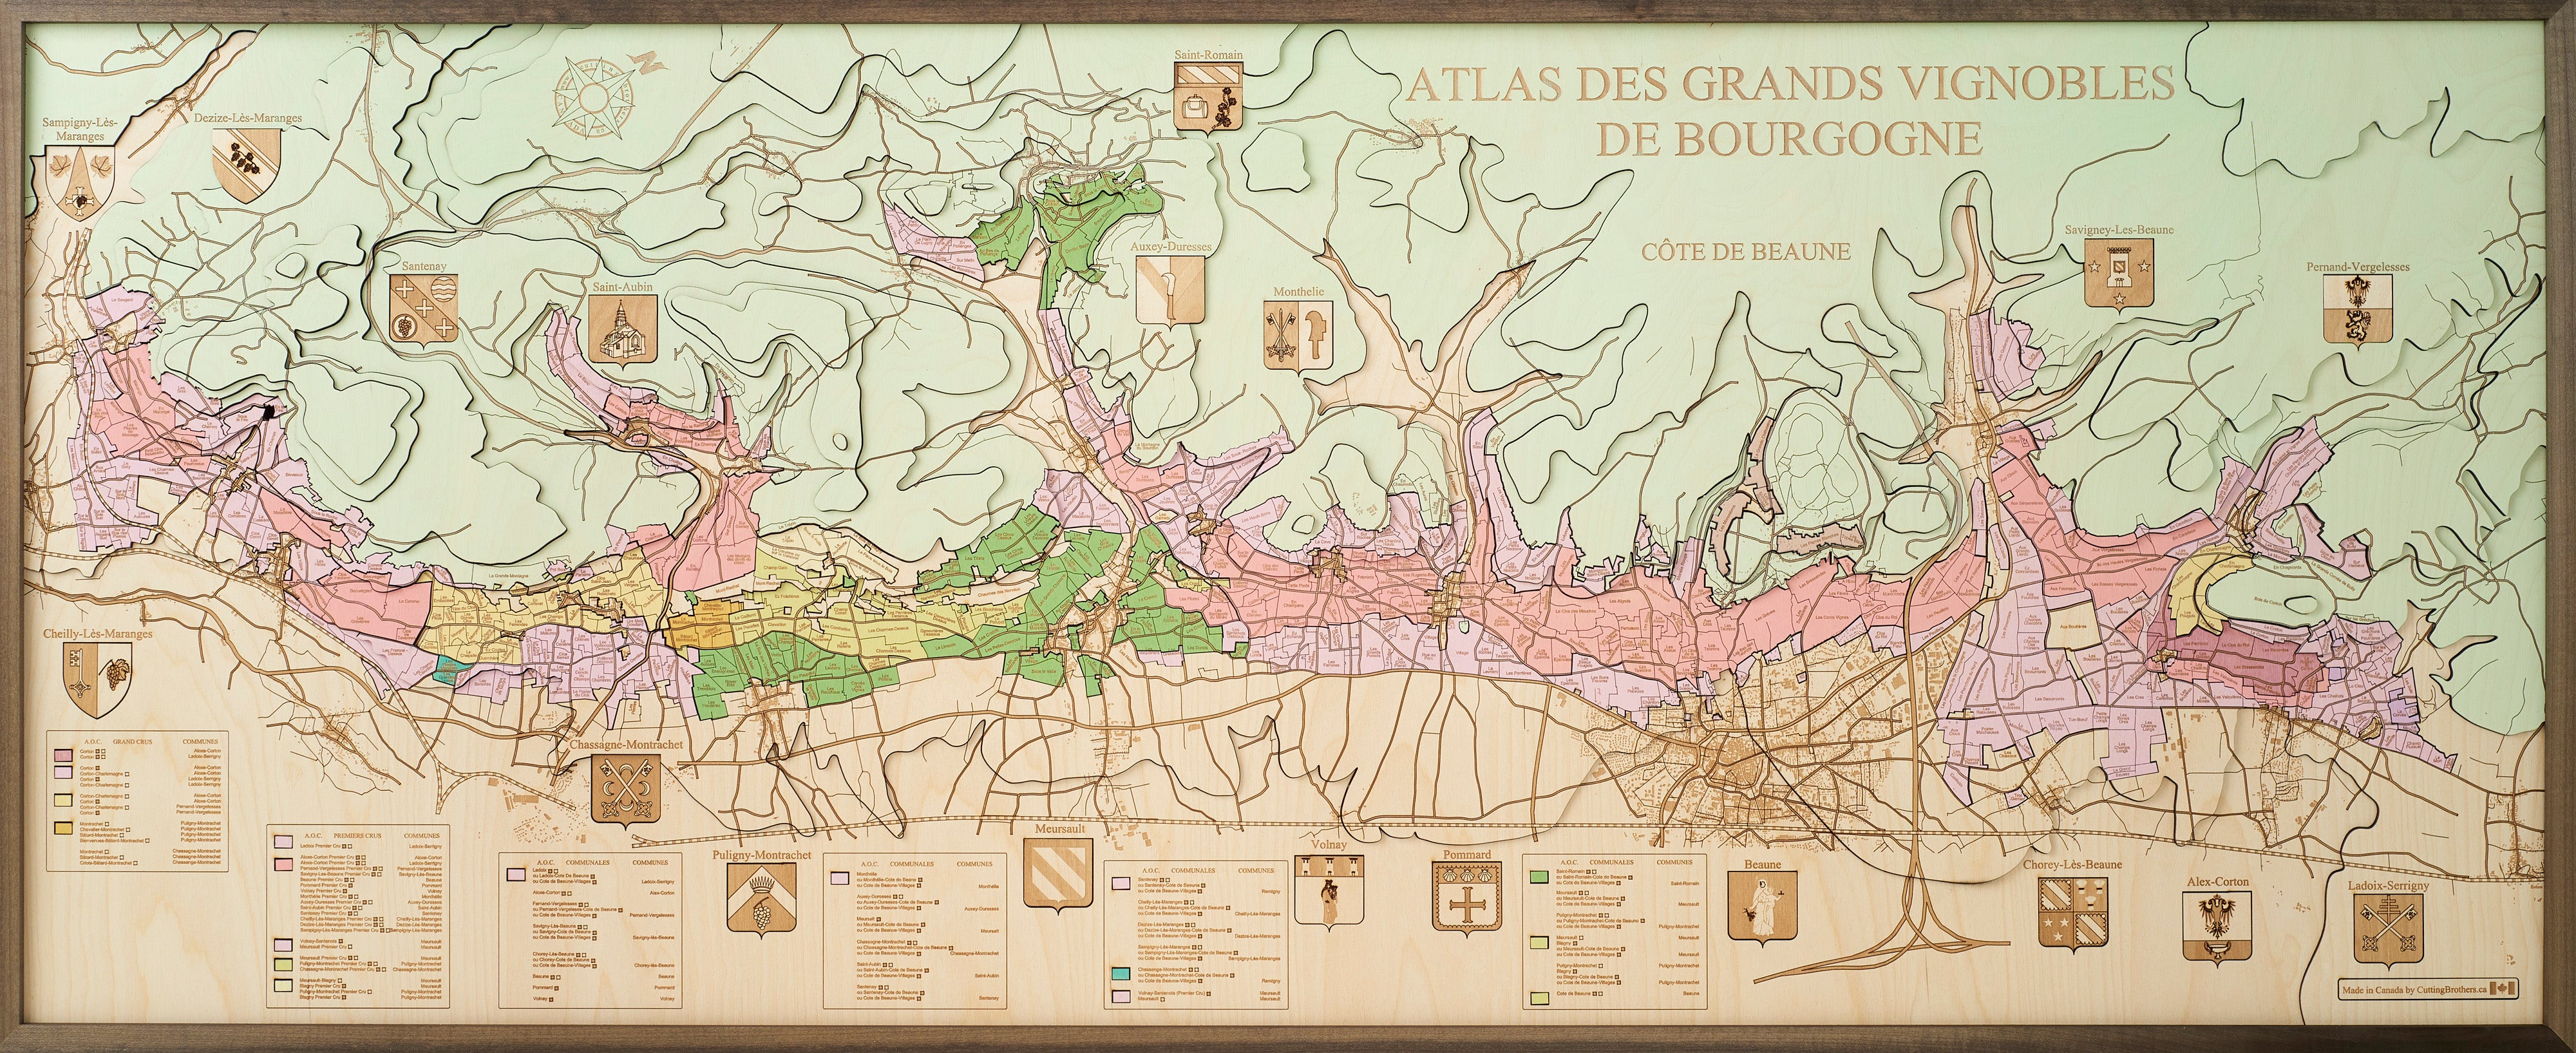 COTE DE BEAUNE-ATLAS DES GRANDS VINOBLES DE BOURGOGNE 3D wooden wall map - version XXL 